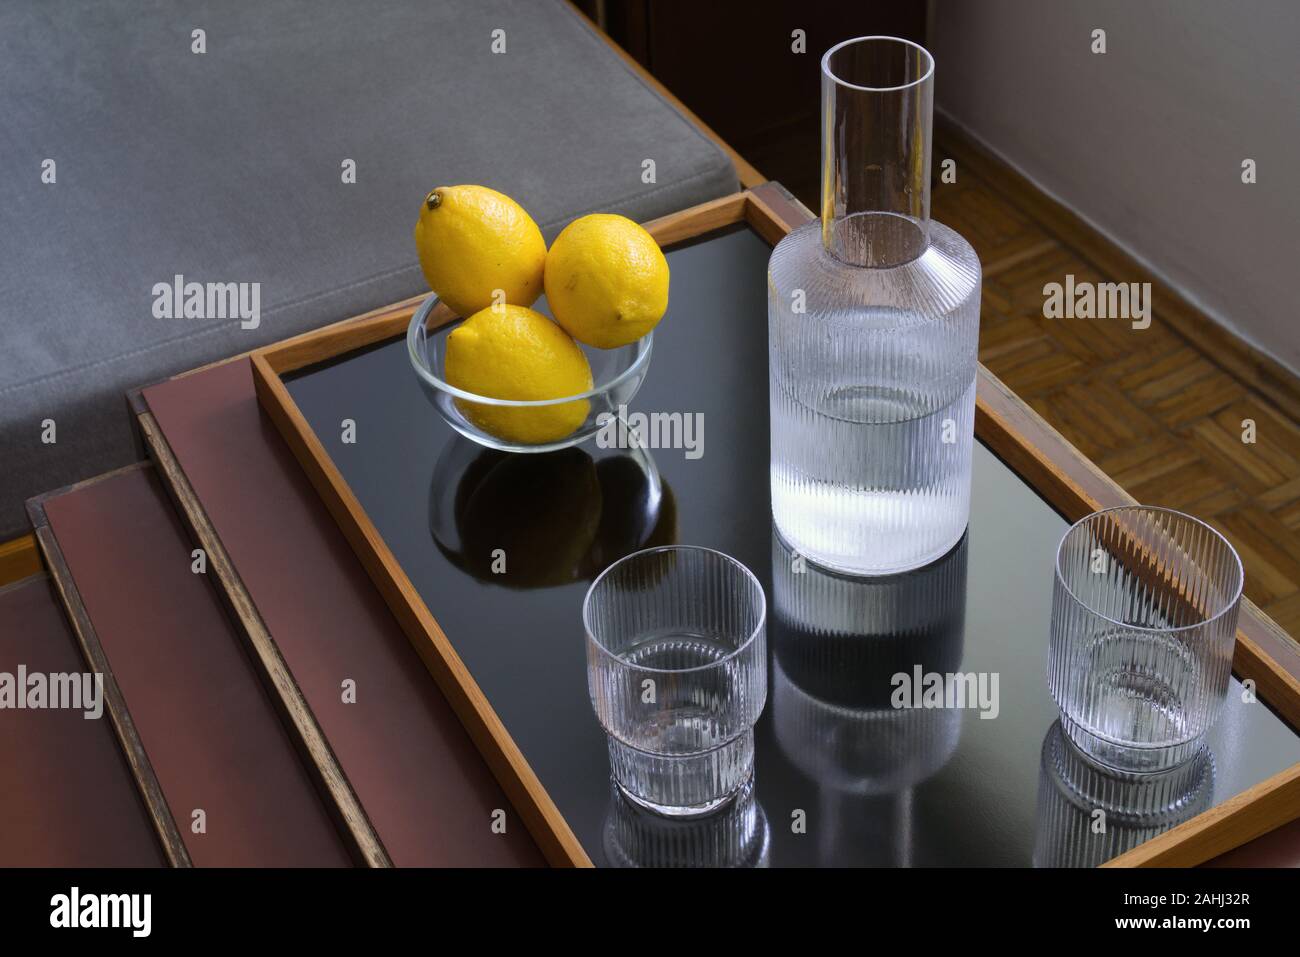 Drei frische gelbe Zitronen in ein Glas Schale, zwei Gläser und Karaffen mit Wasser auf modernen Fach auf Tabelle, noch Leben Stockfoto